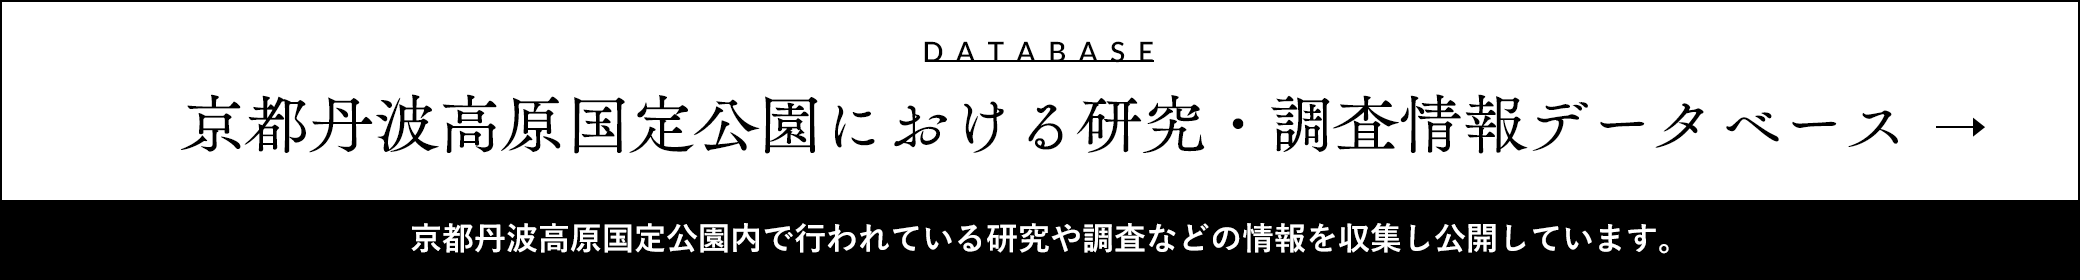 京都丹波高原国定公園における研究・調査情報データベース